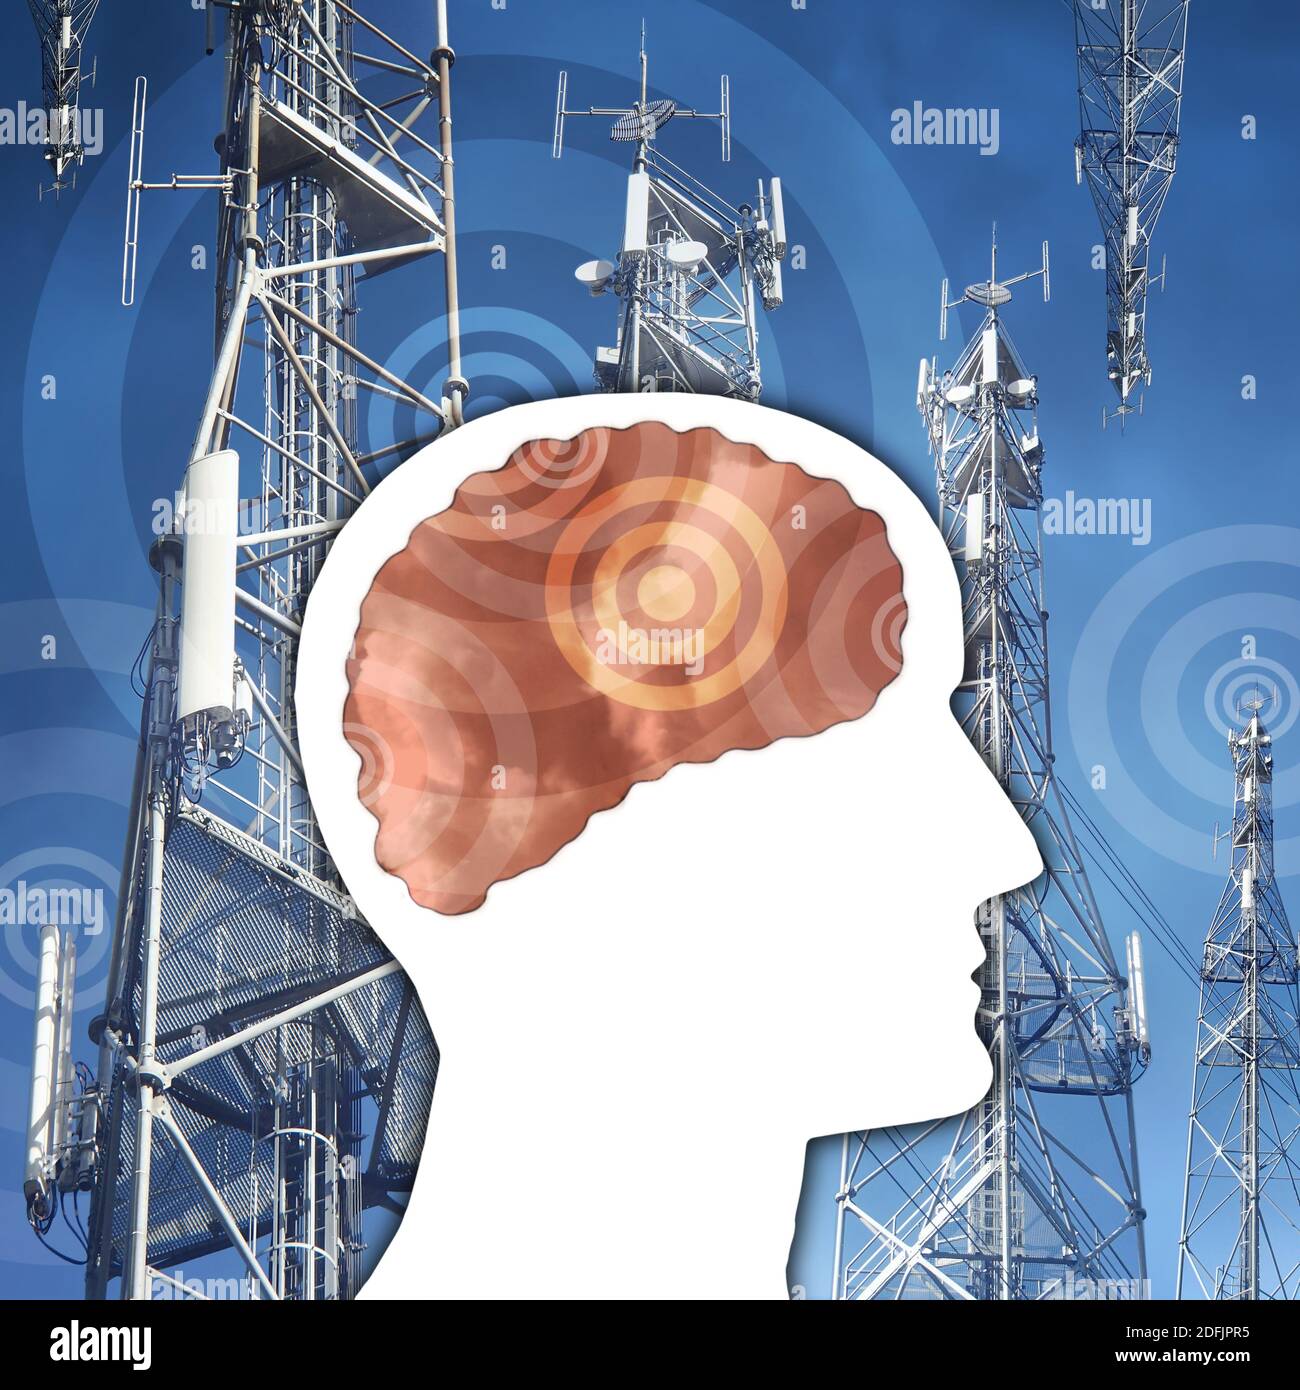 5G antennes et ondes électriques autour et à l'intérieur du cerveau humain Profil - Collage Banque D'Images